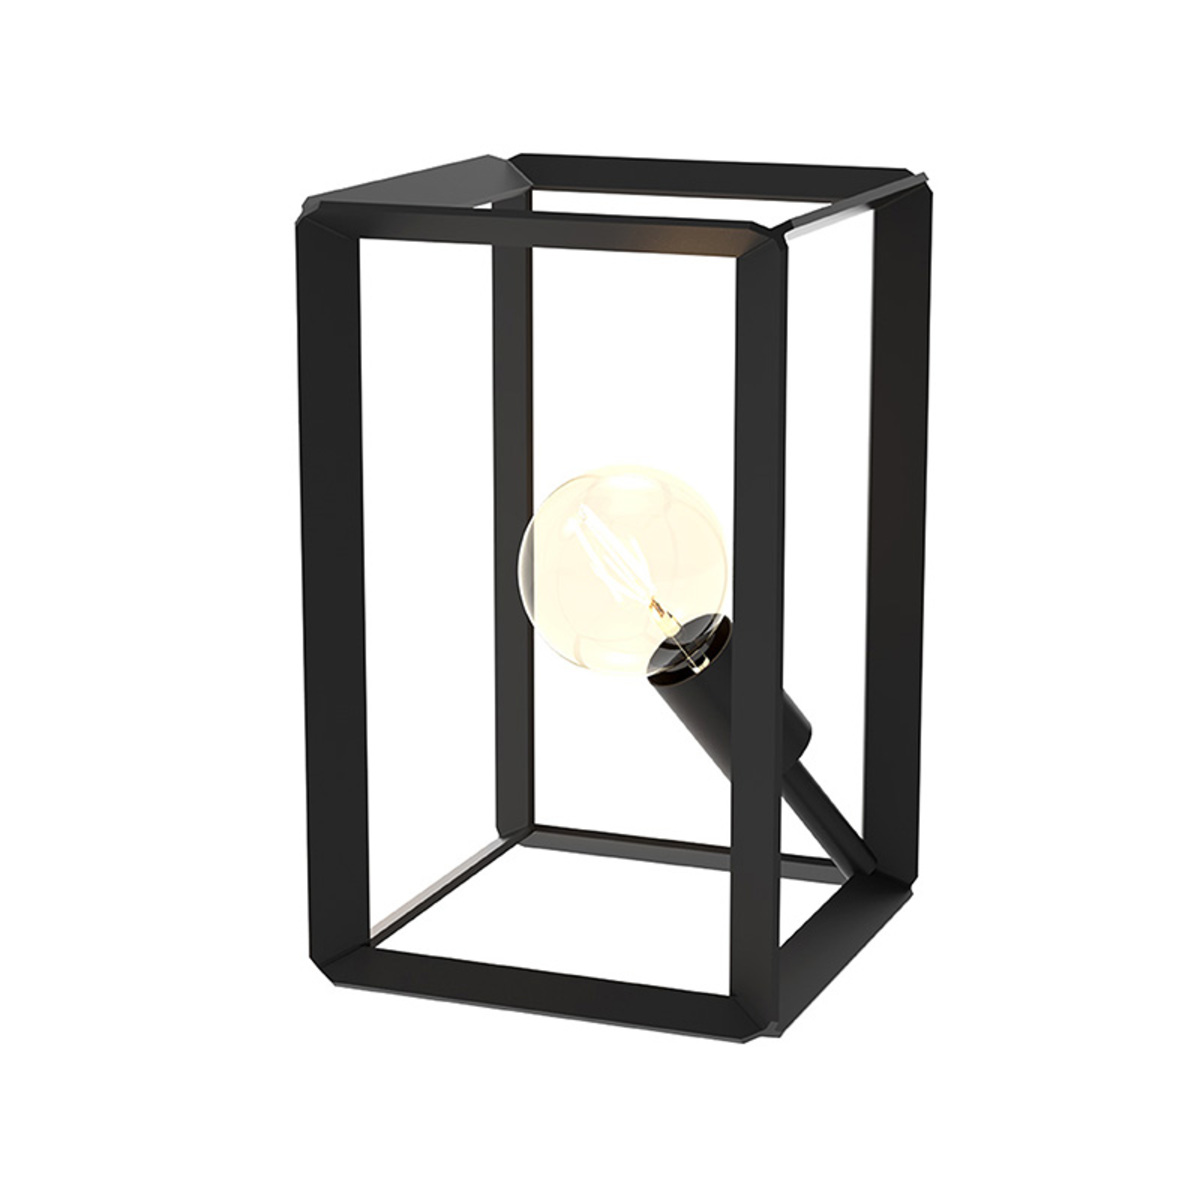  Tafellamp Tetto - Zwart - Metaal afbeelding 1